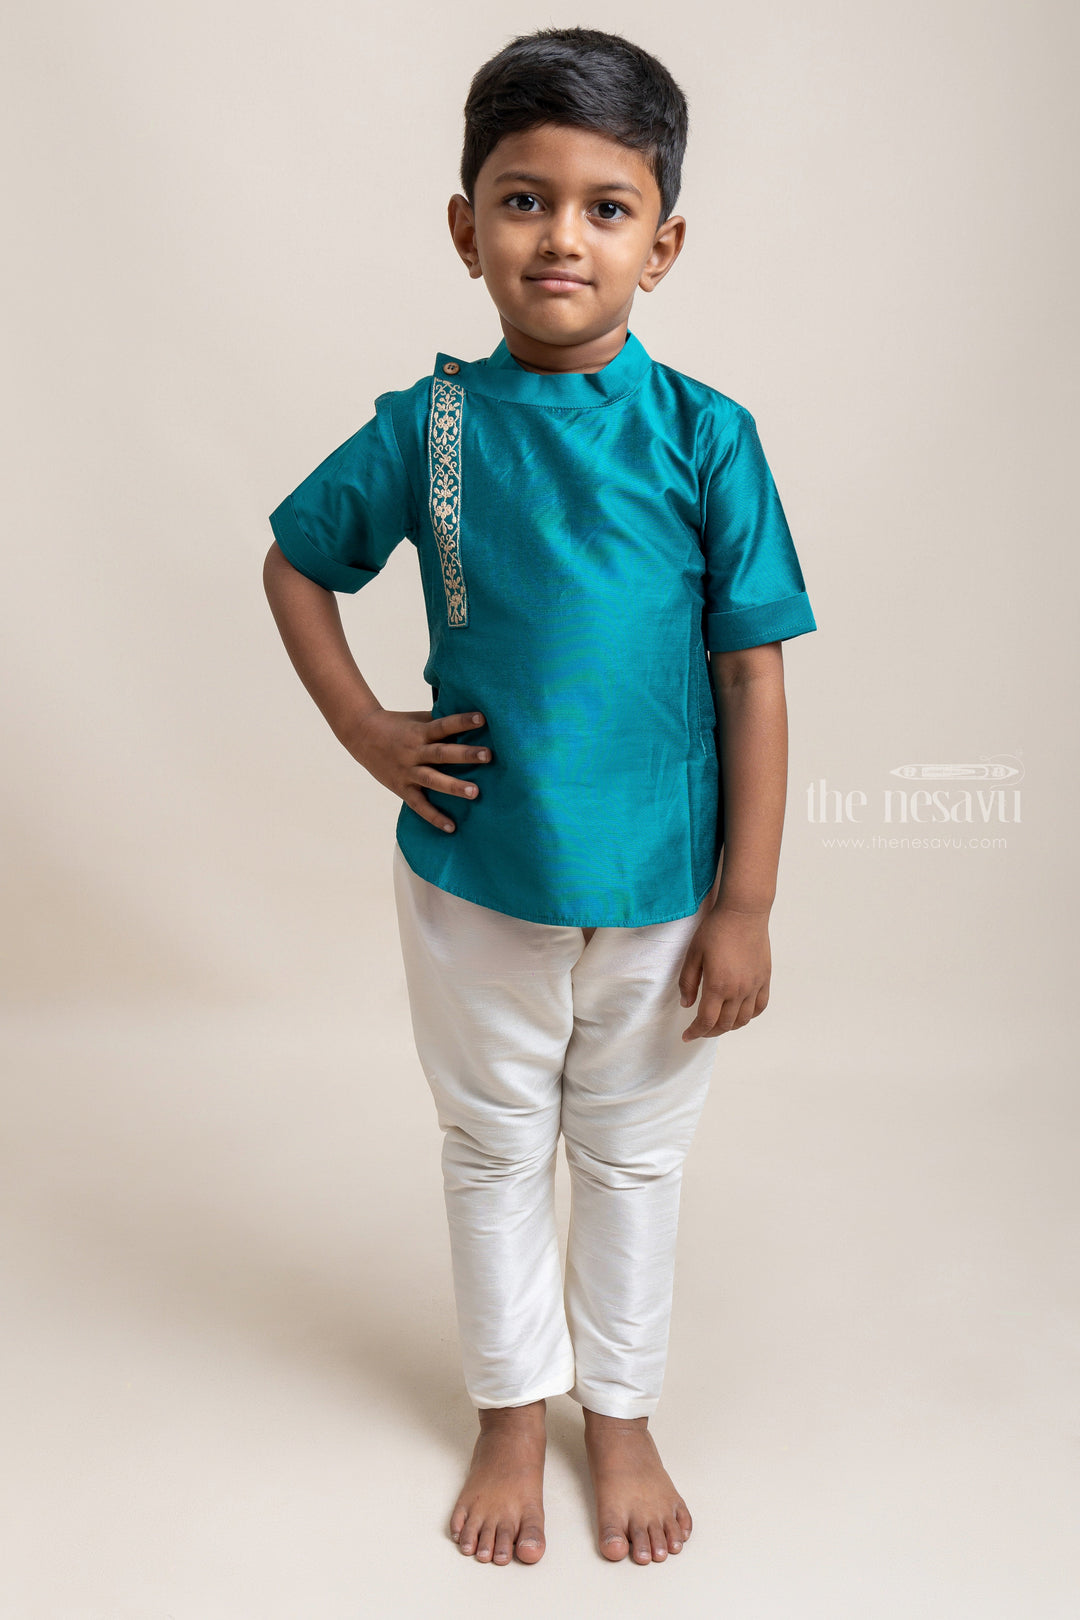 The Nesavu Boys Silk Shirt Gorgeous Peacock Blue Soft Cotton Shirt For Little Boys Nesavu 12 (3M) / Blue / Silk Blend BS016C-12 Ethnic Cotton Shirts For Boys | Premium Boys Wear | The Nesavu